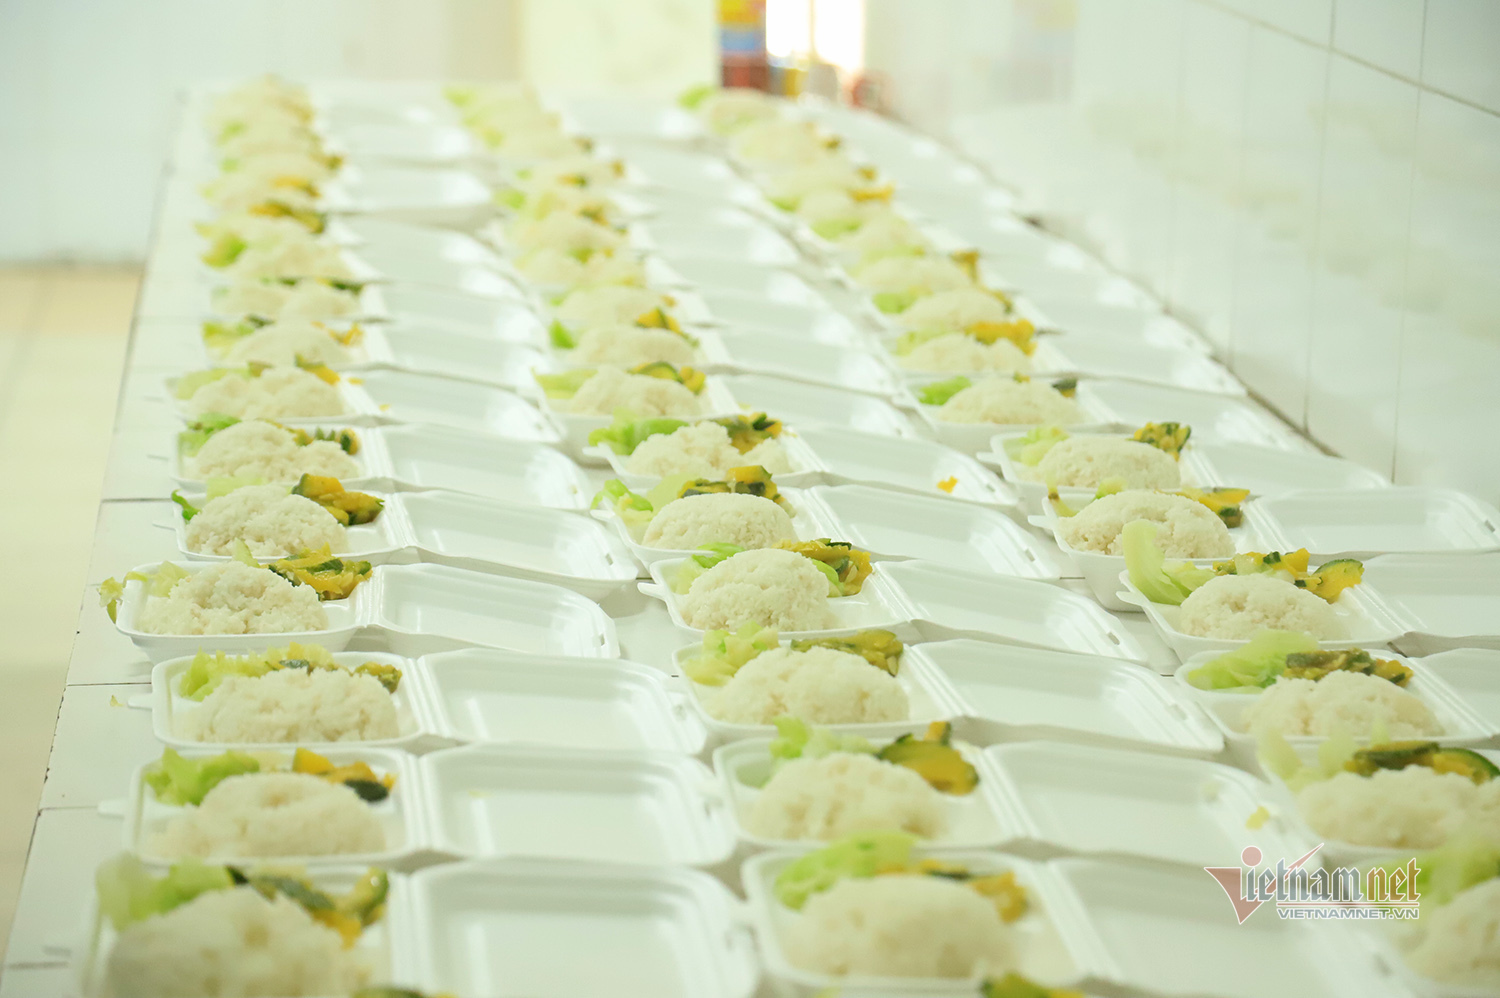 Các suất ăn phục vụ gần 100 người trong khu cách ly bệnh viện Công an TP Hà Nội